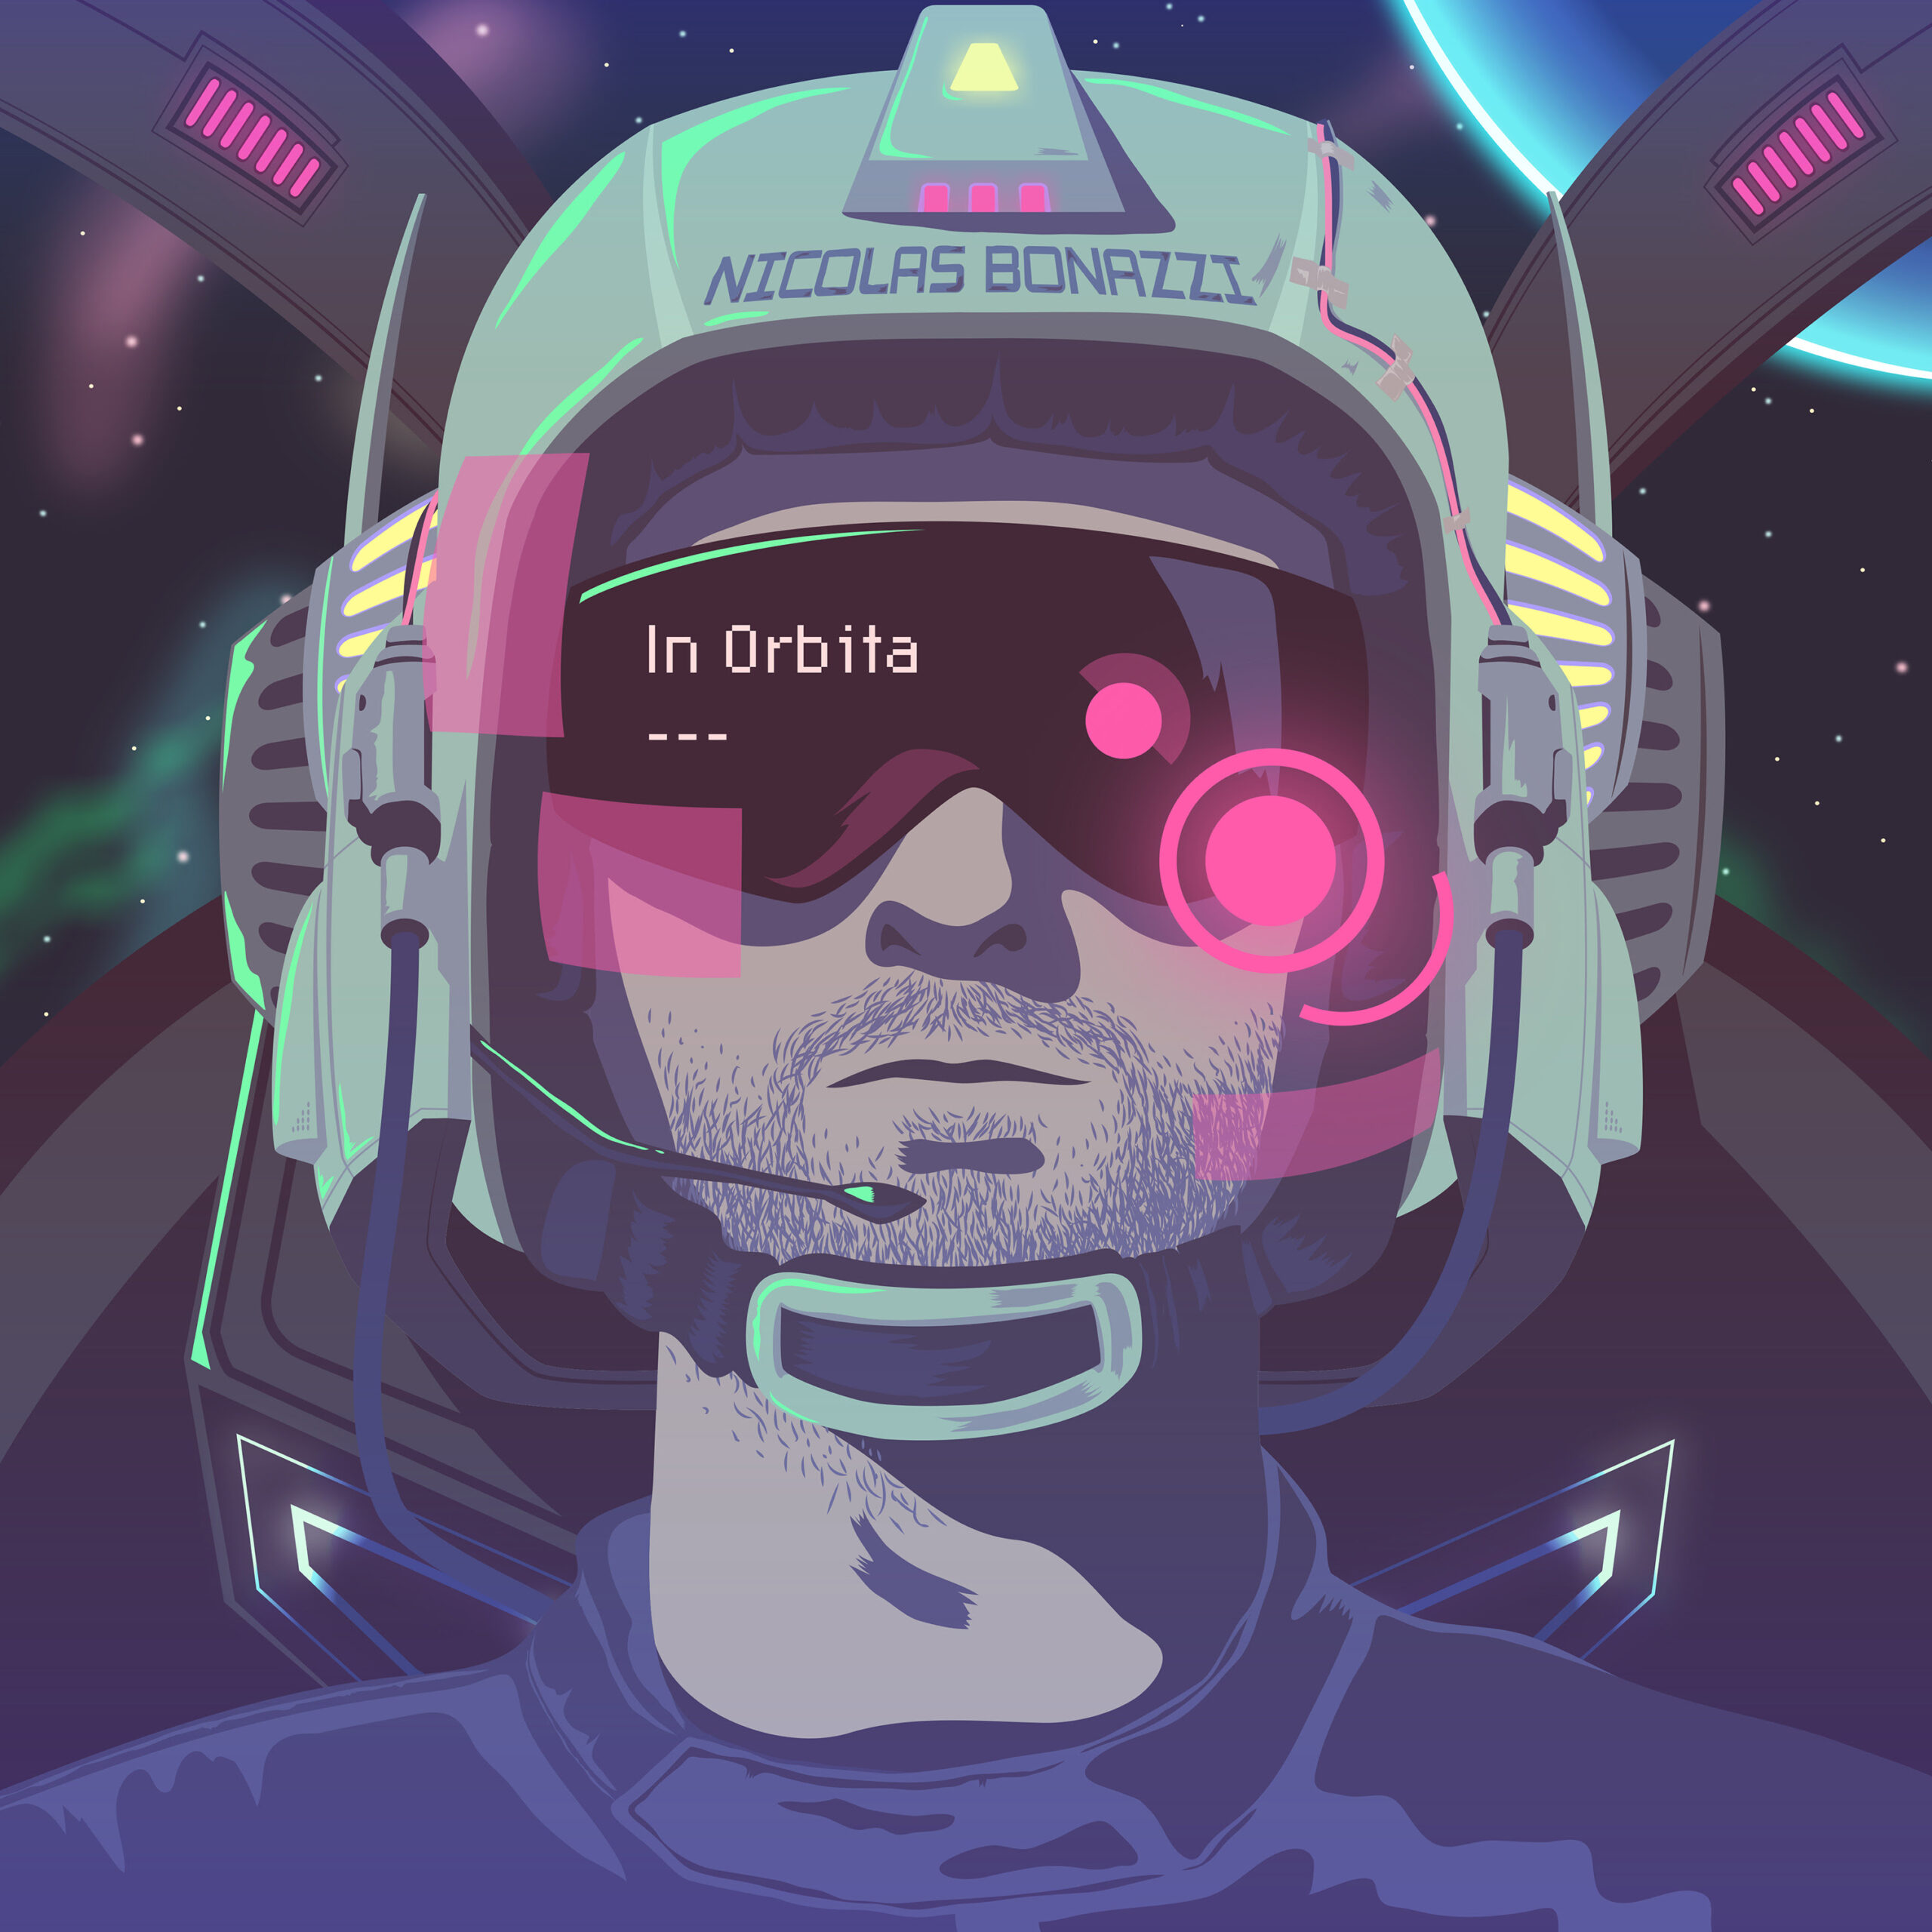 Nicolas Bonazzi “In Orbita” Il nuovo singolo dal 24 maggio in digitale e dal 31 maggio in radio